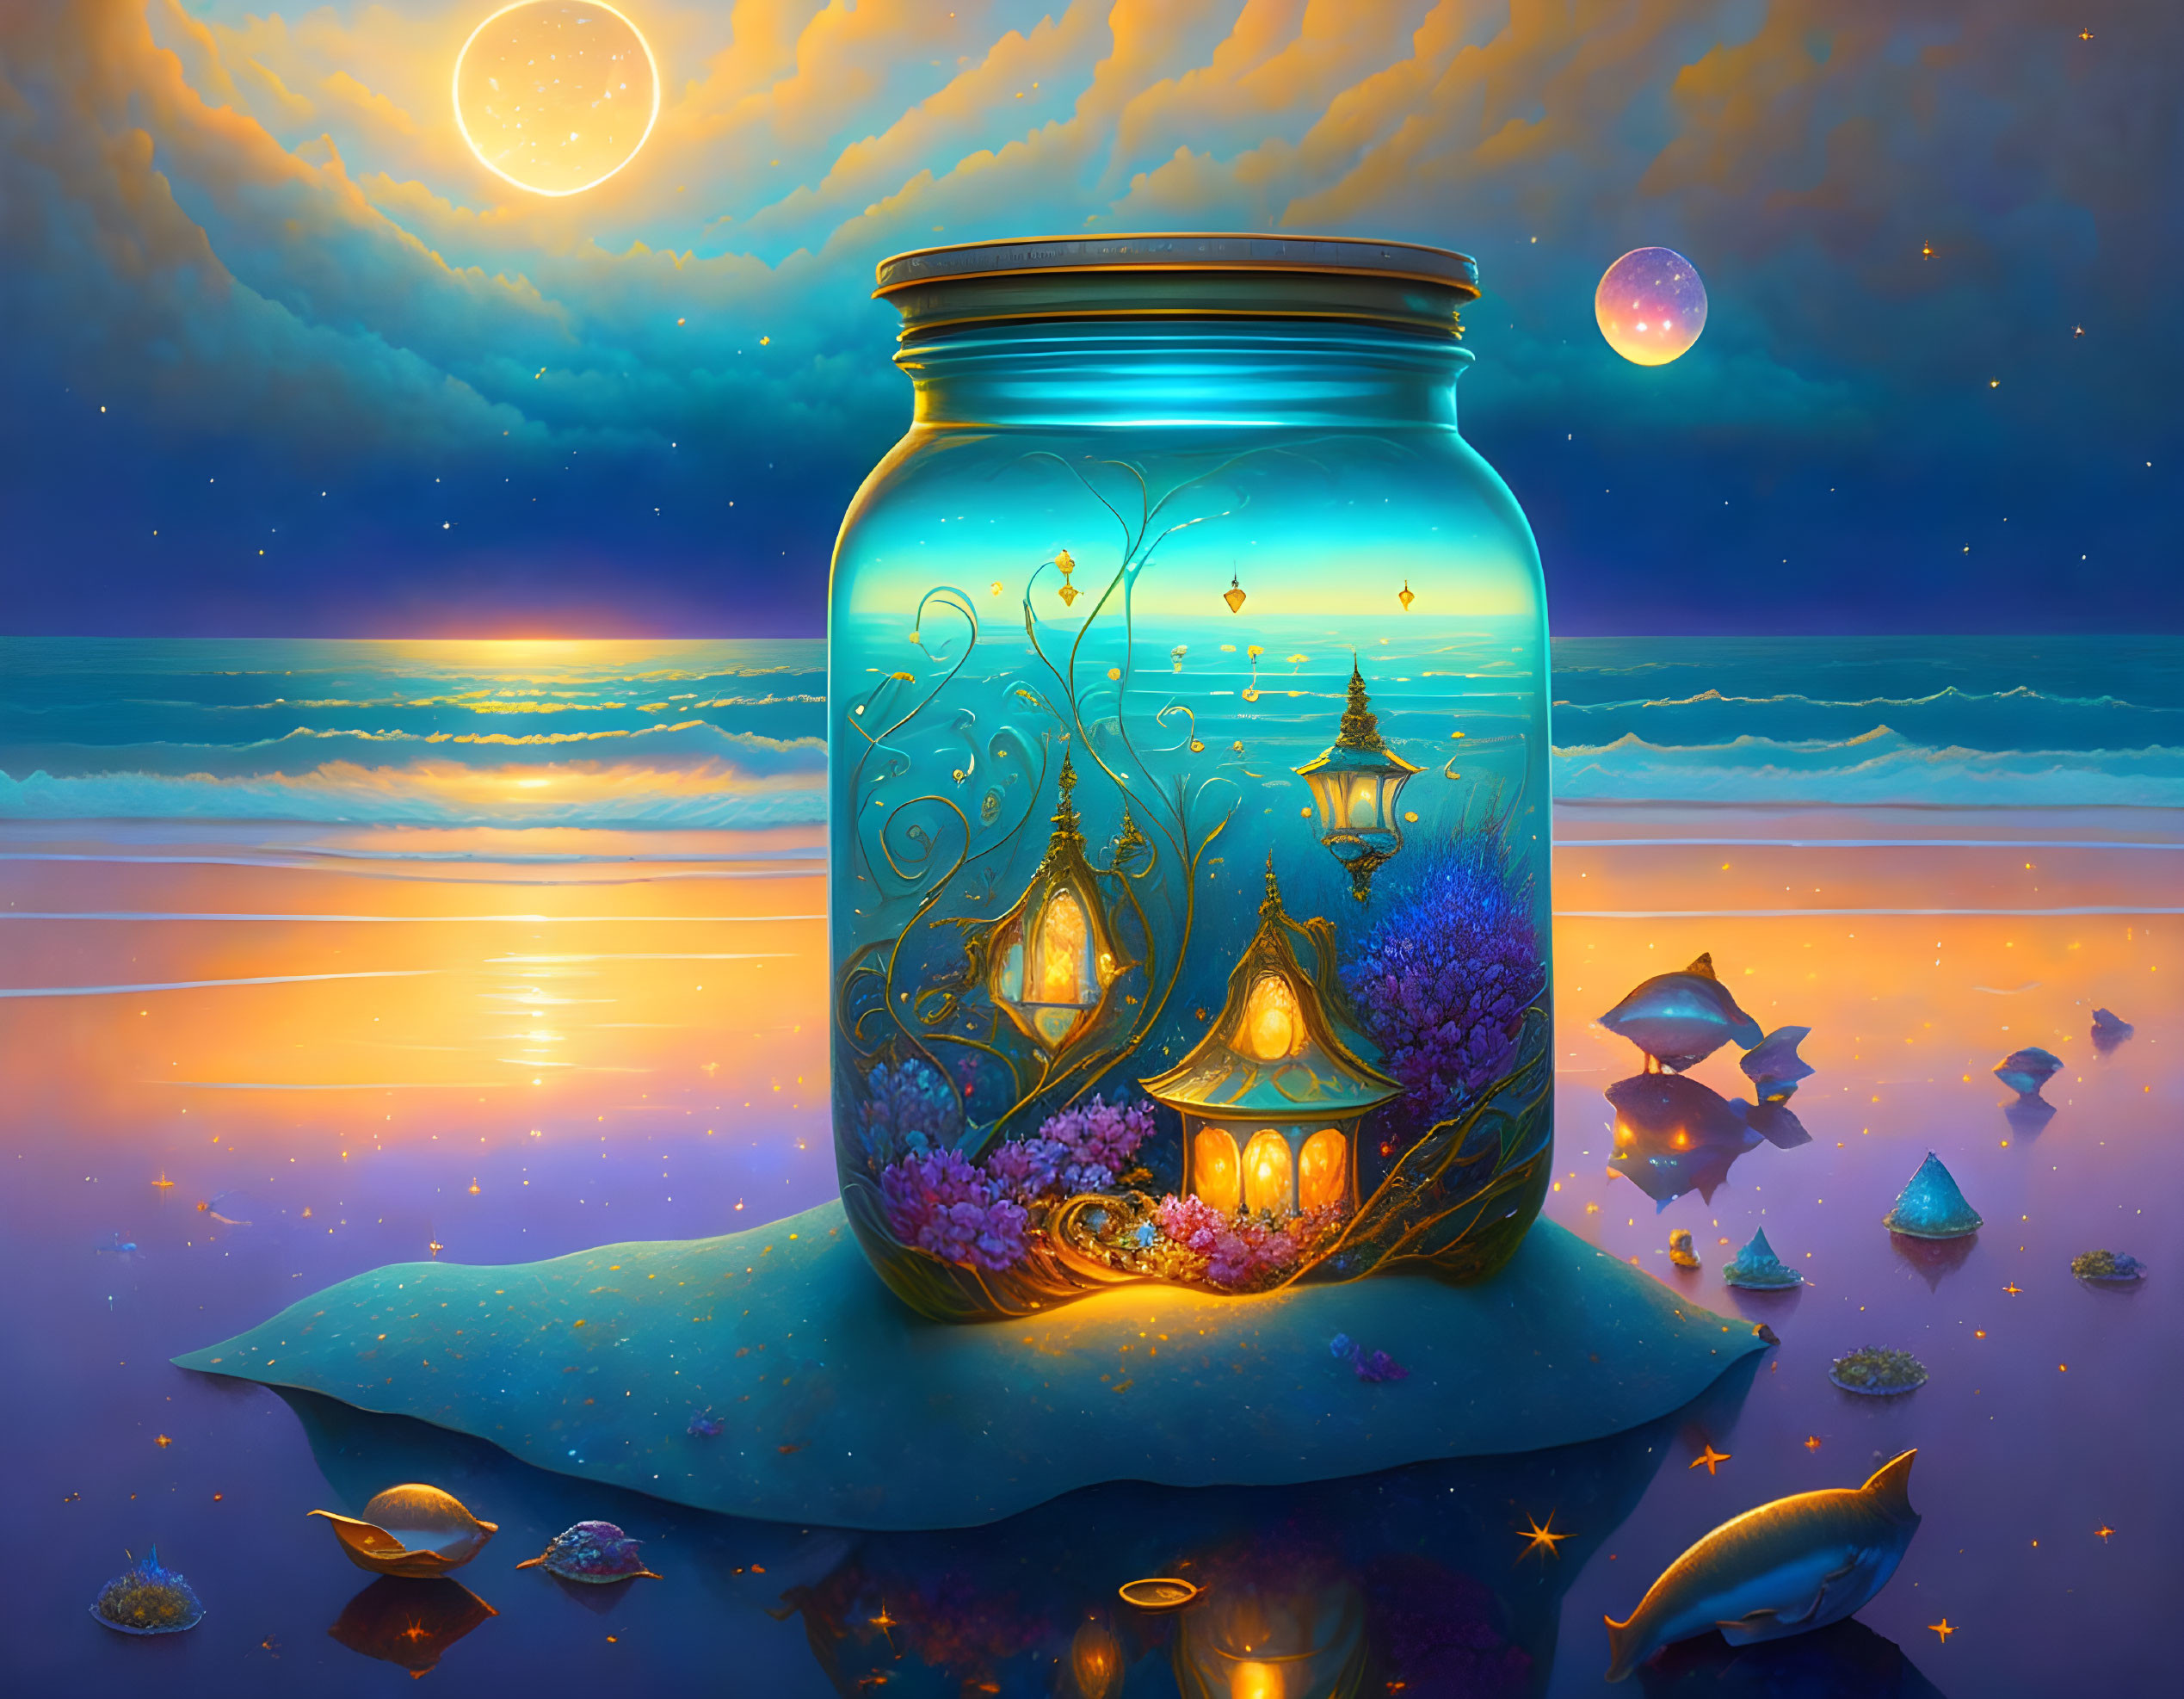 A Jar of dreams,washed ashore